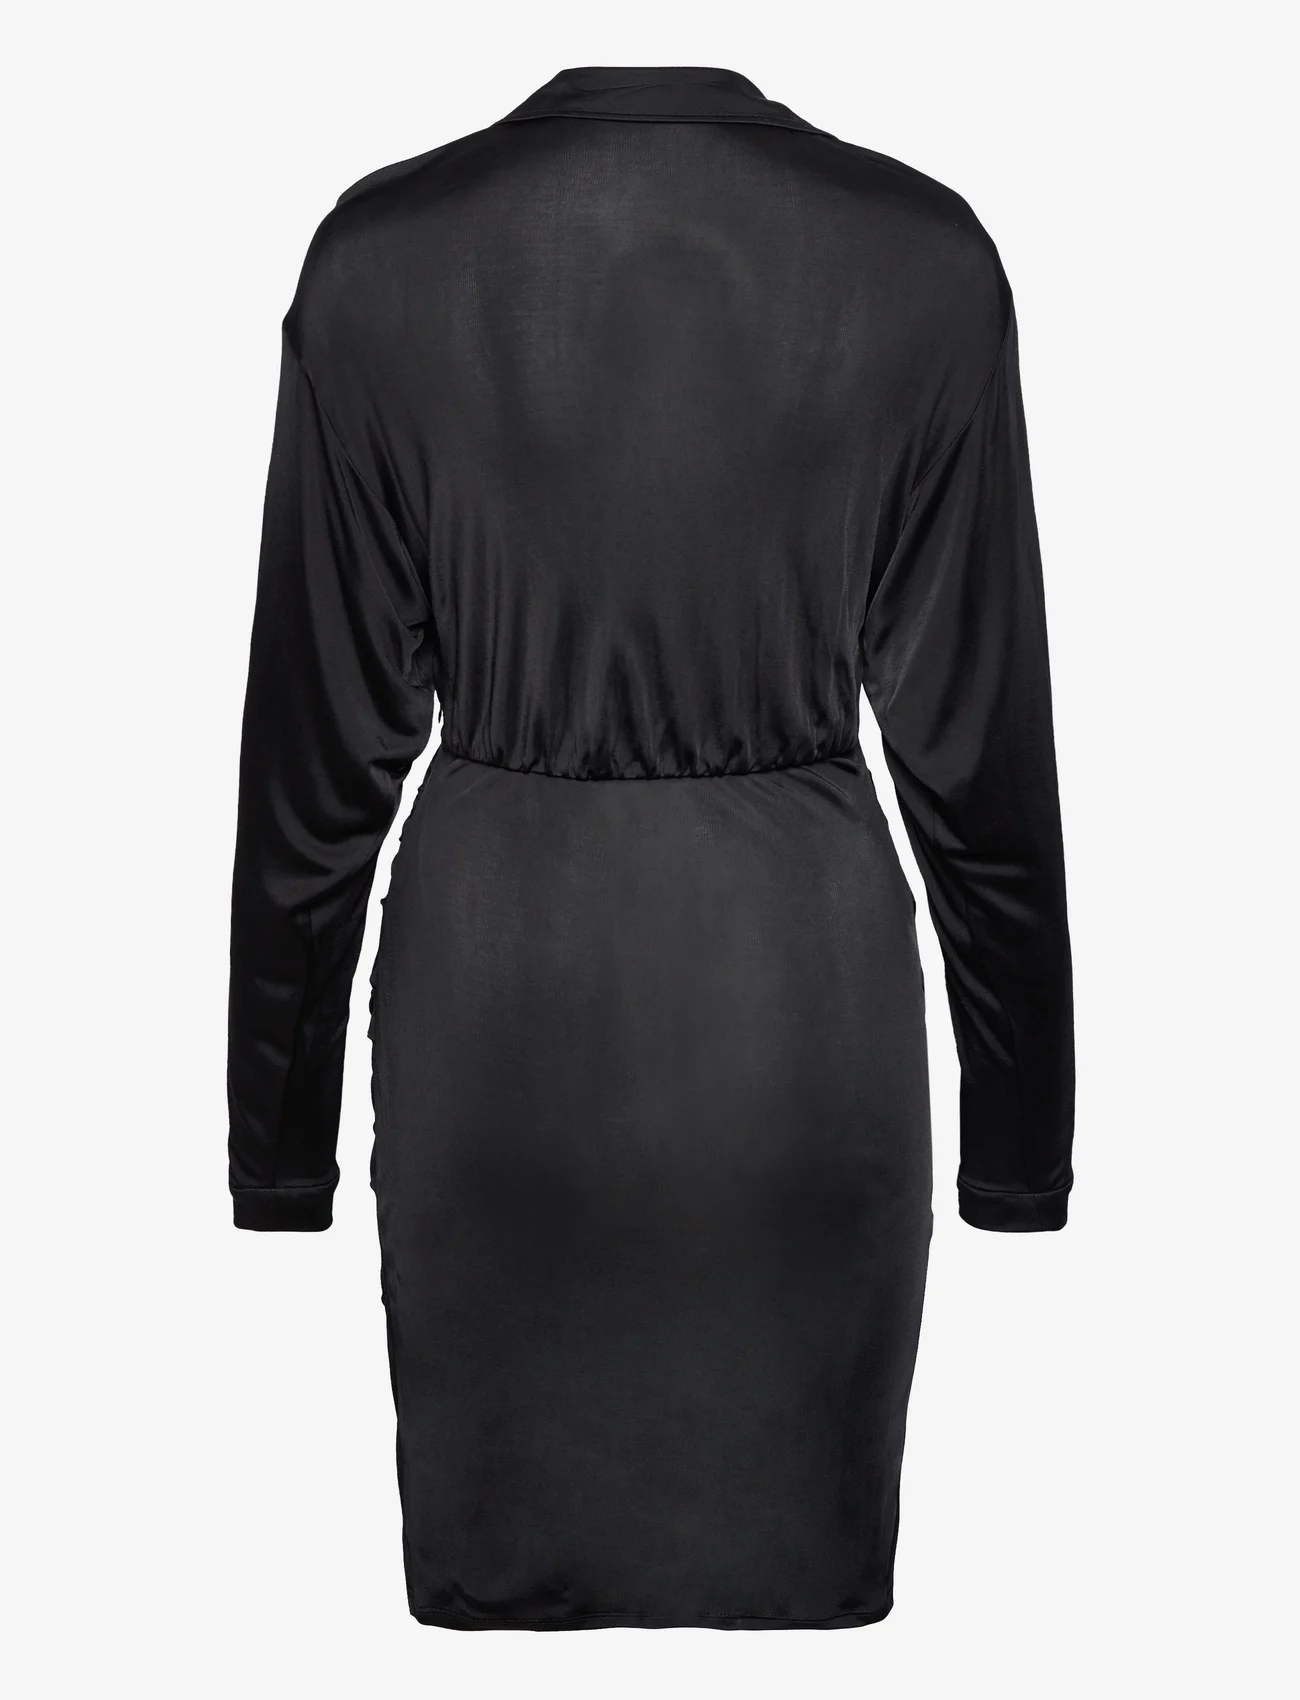 Diane von Furstenberg - DVF TROIAN DRESS - festmode zu outlet-preisen - black - 1